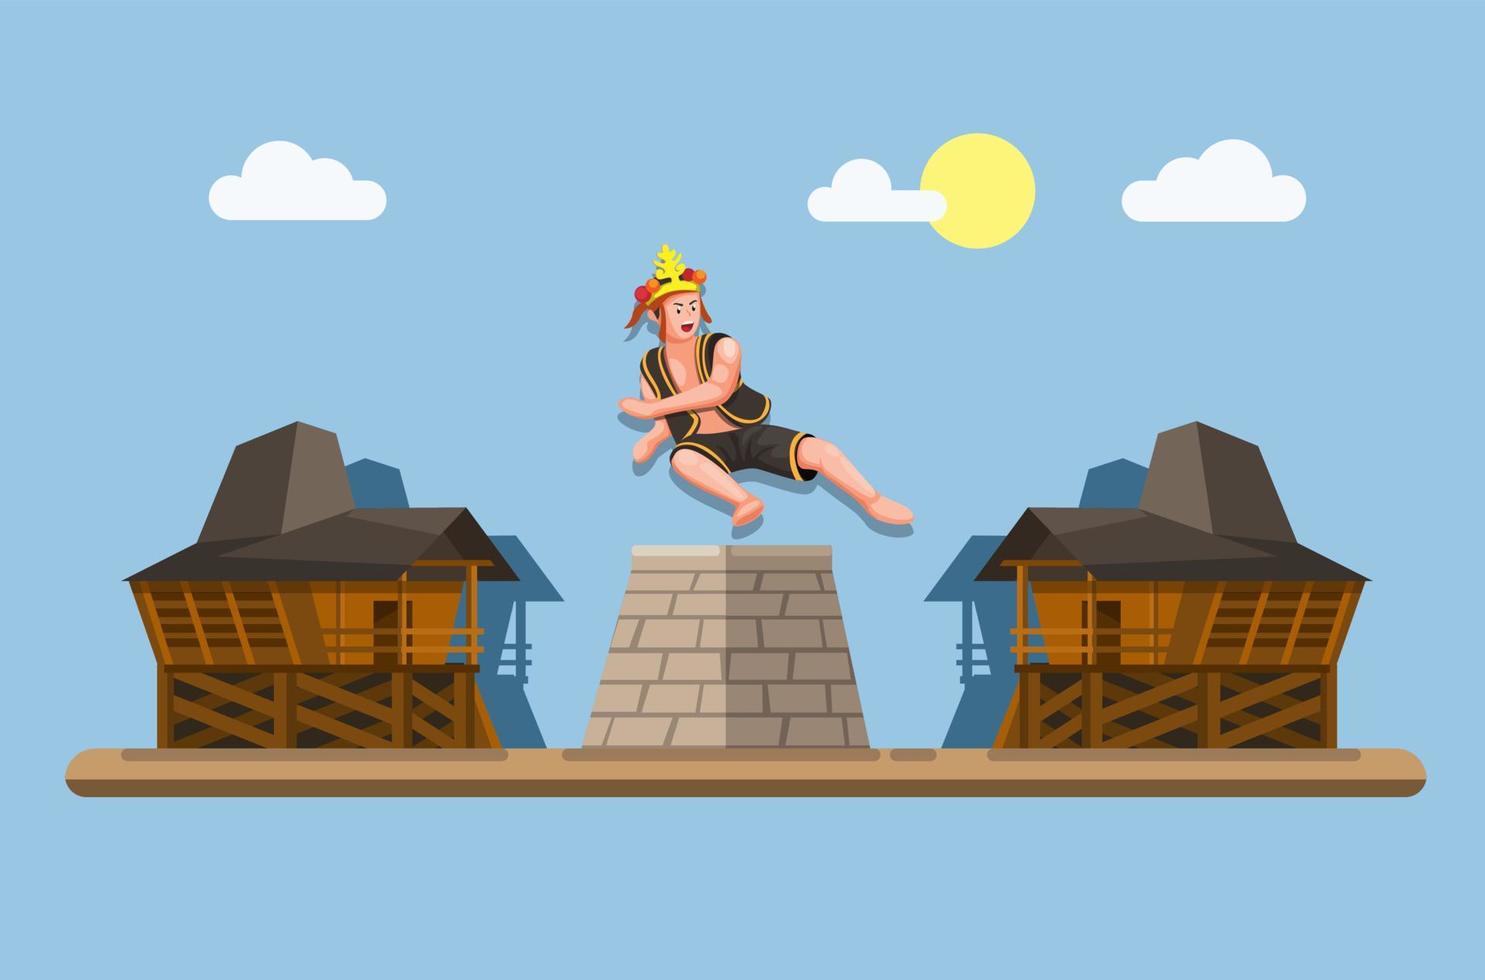 El salto de piedra u hombo batu era un ritual de virilidad para los niños en la isla de nias, indonesia. niño salta sobre una piedra de 6 pies para demostrar su concepto de hombría en vector de ilustración de dibujos animados